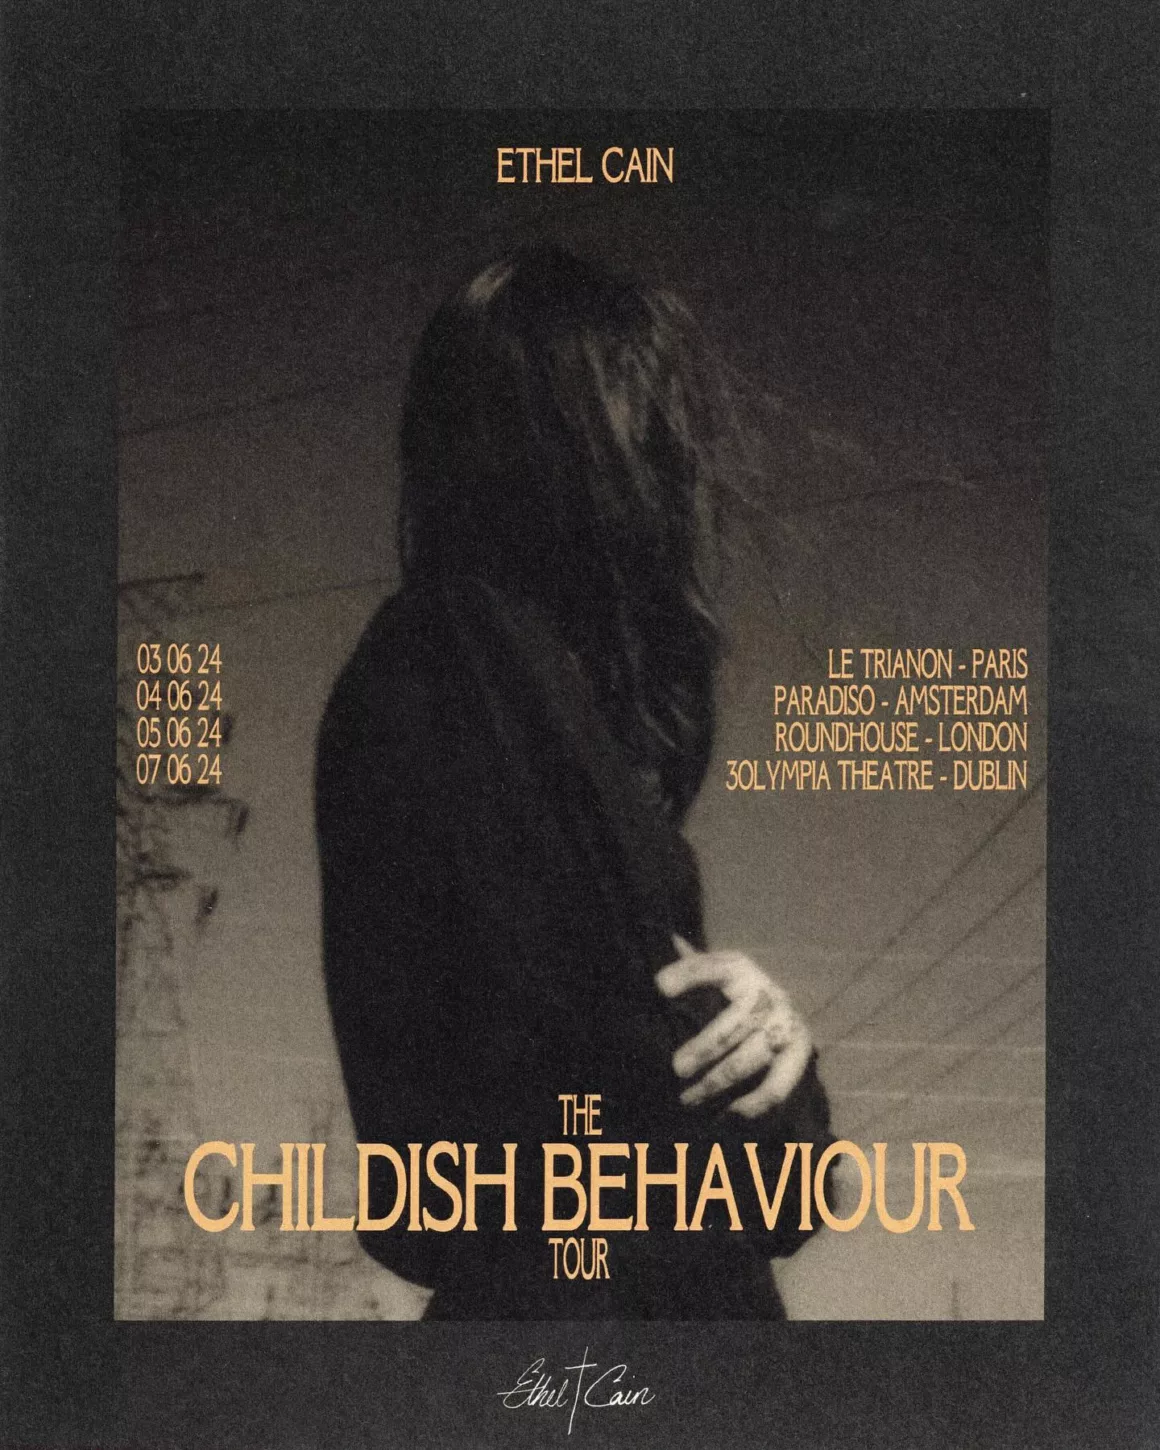 Dates for Childish Behaviour tour